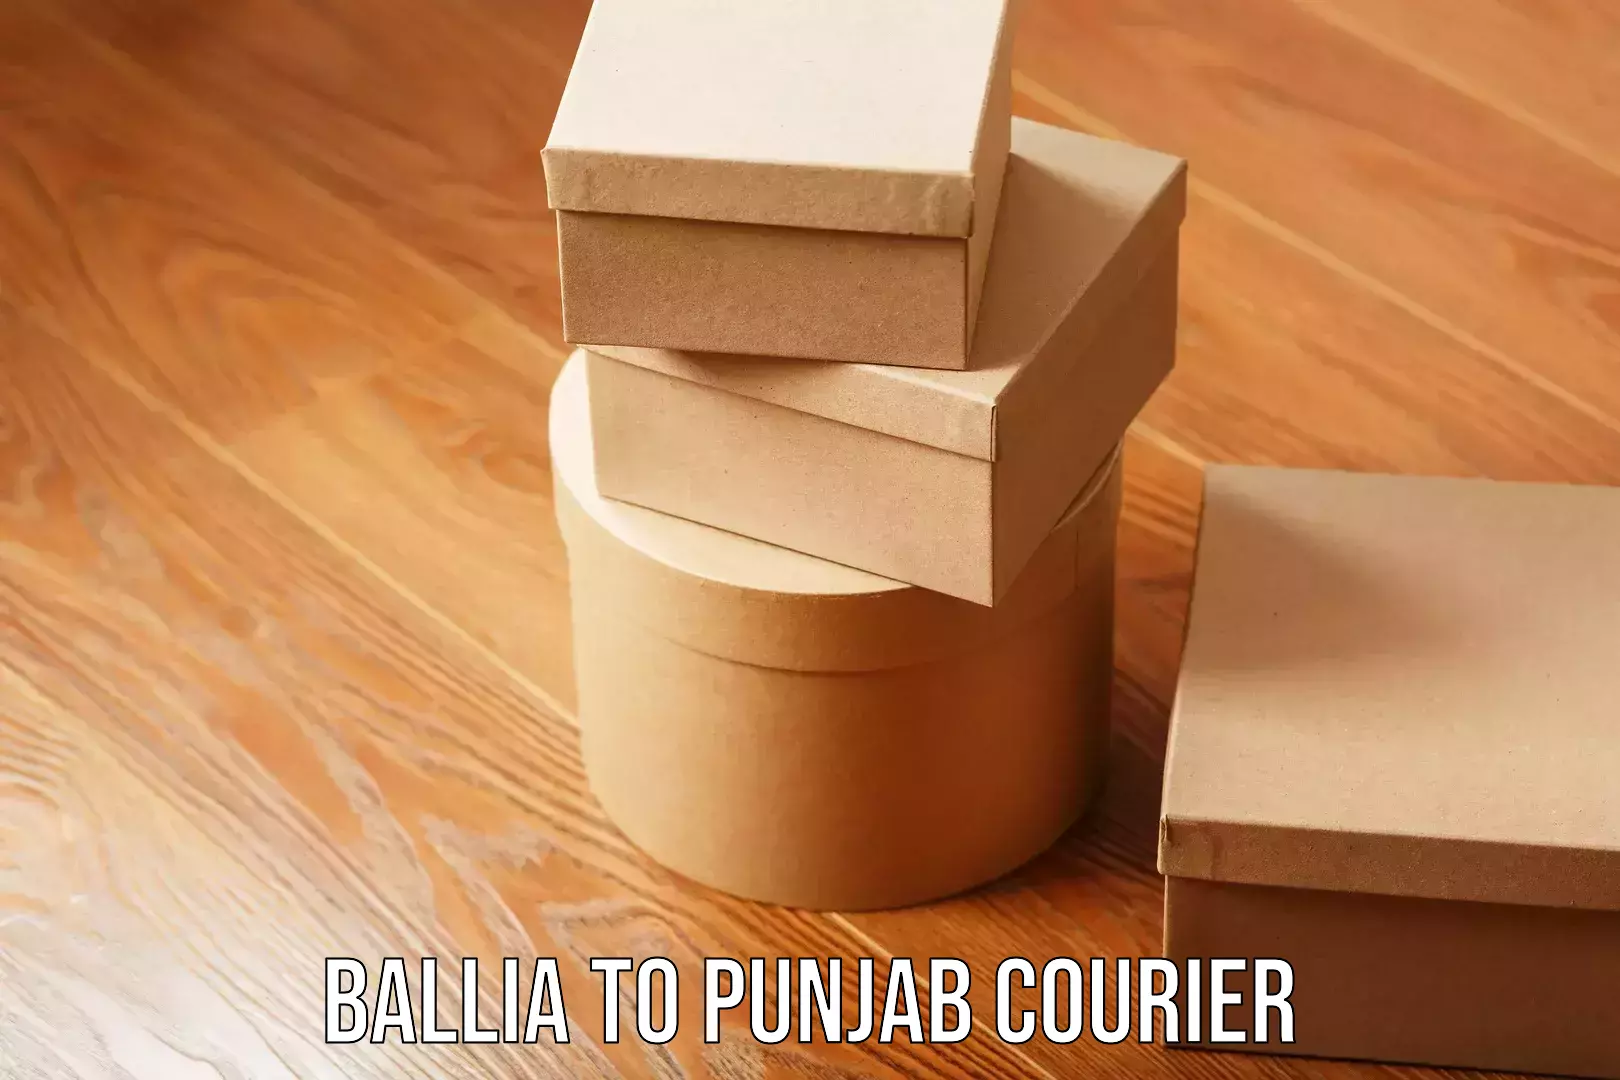 Efficient shipping platforms Ballia to Punjab